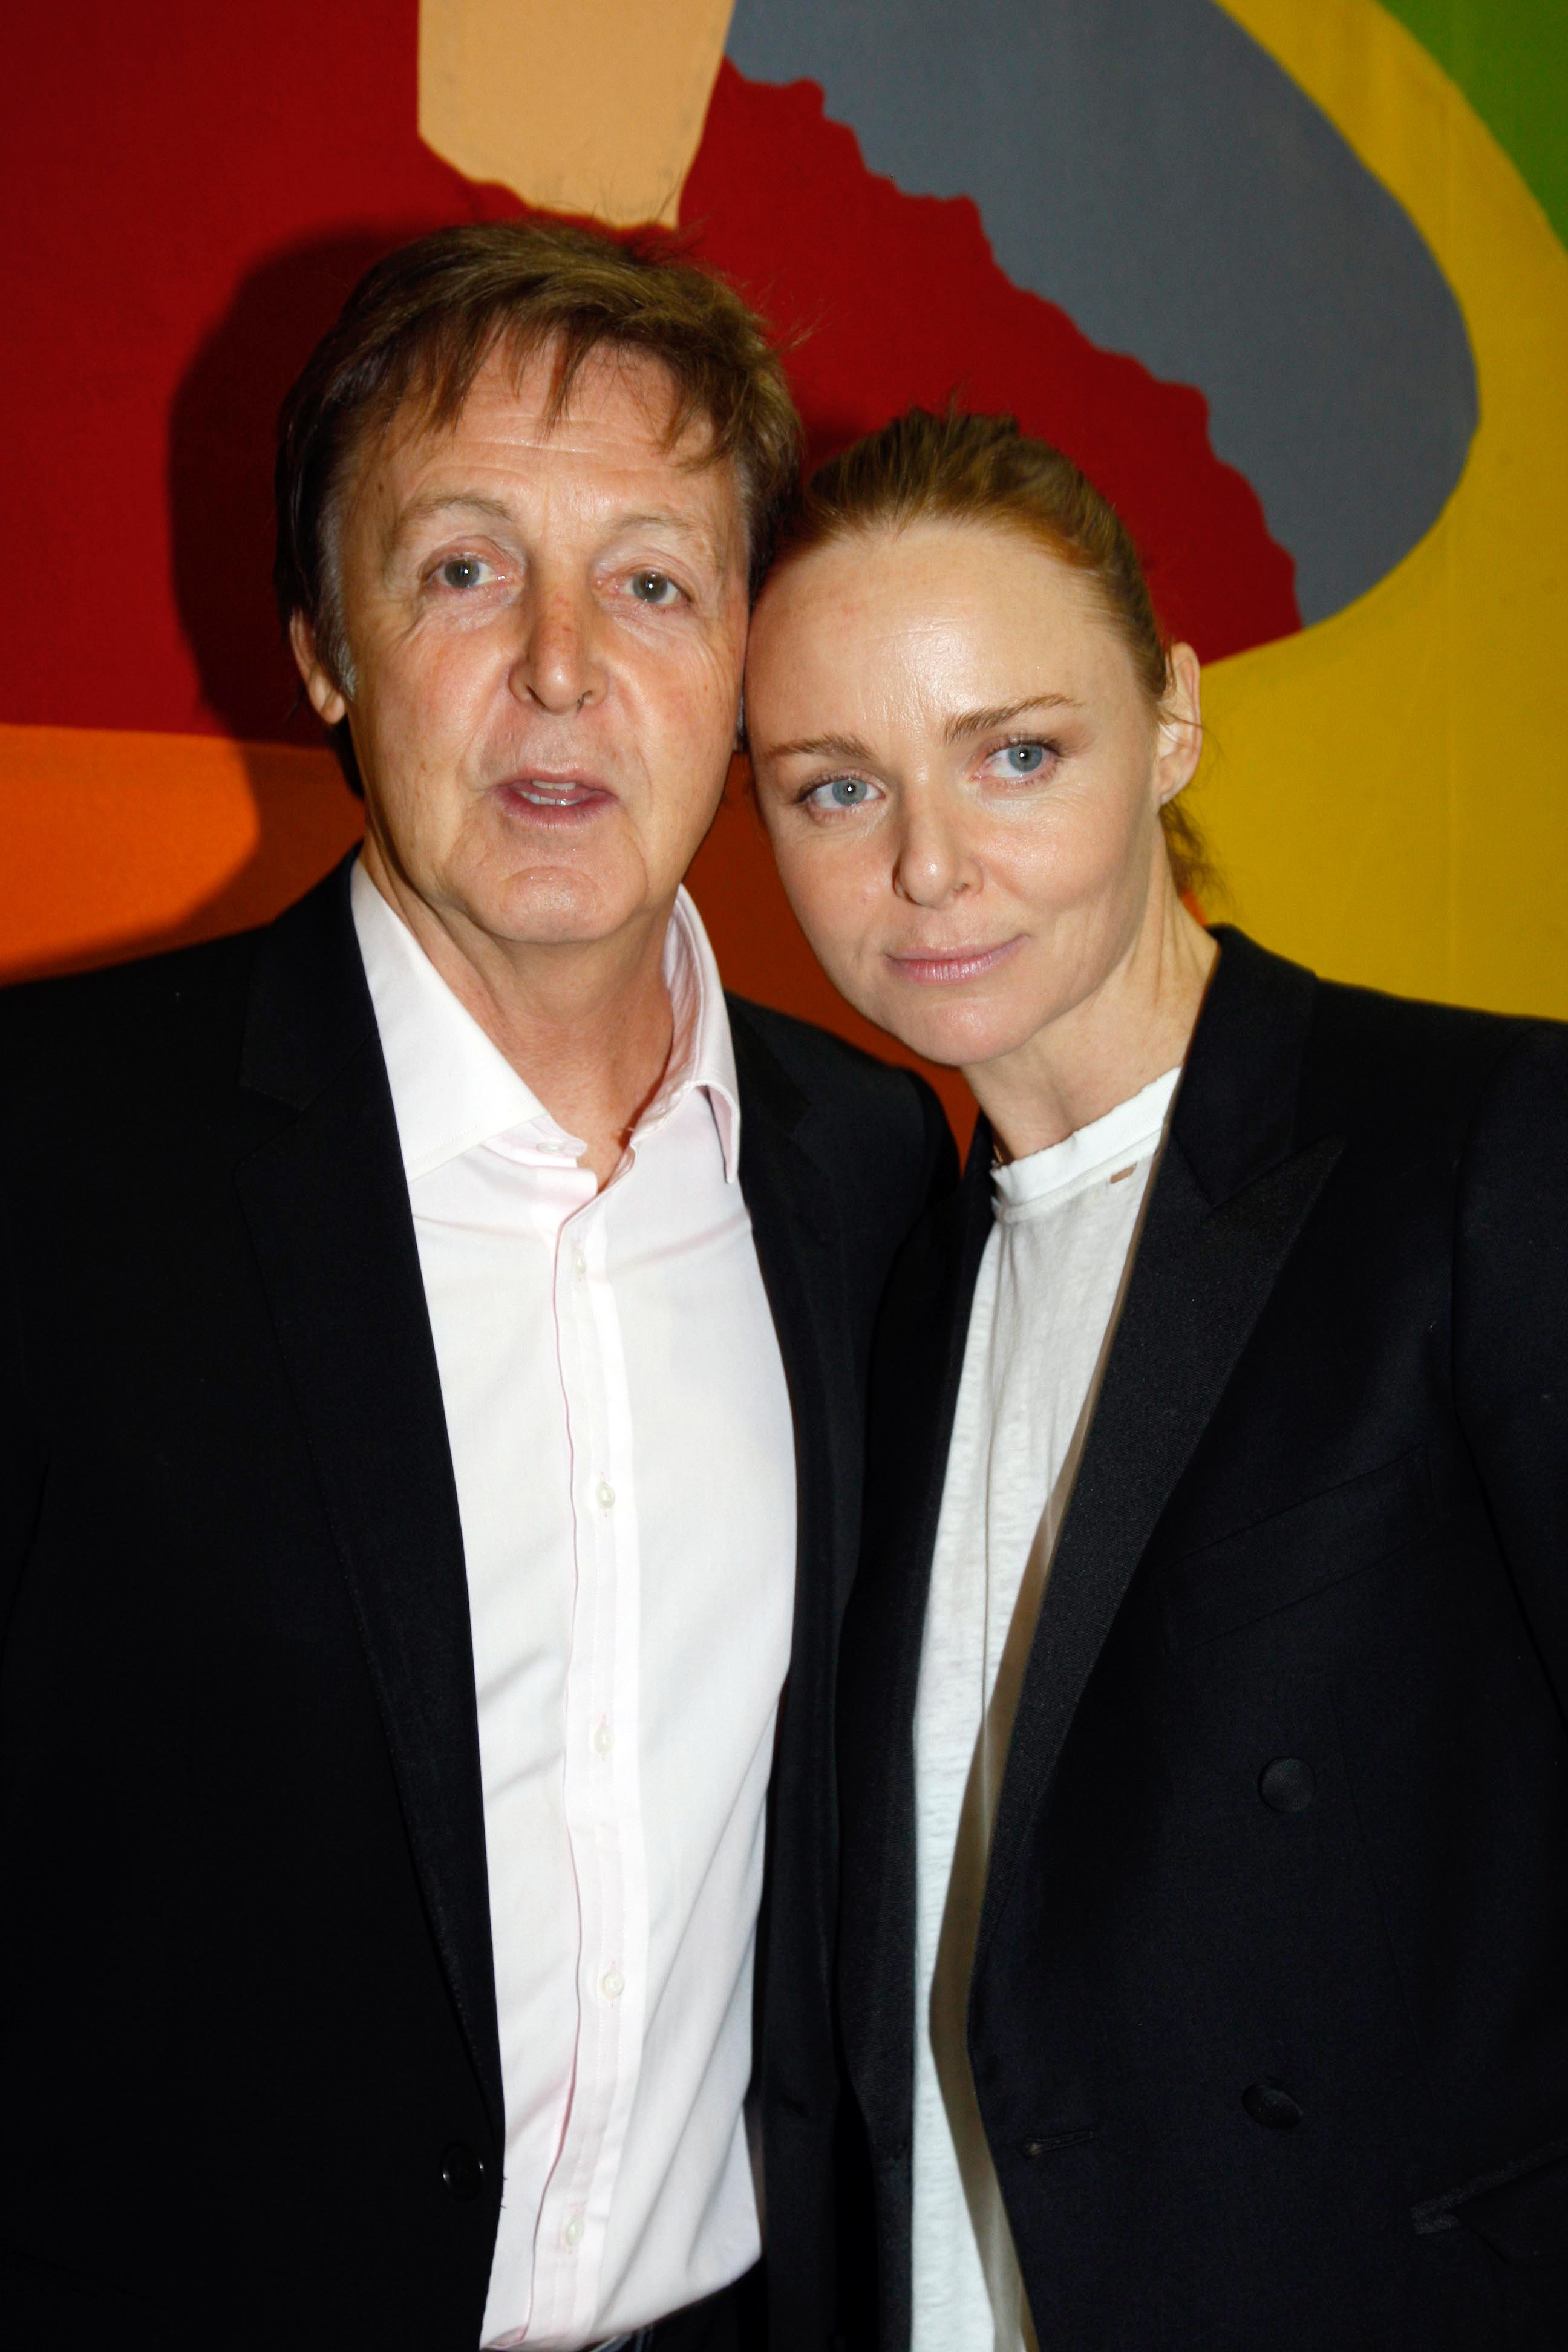 Paul McCartney und Stella McCartney bei ihrer Show auf der Paris Fashion Week 2009 am 2. Oktober 2008 in Paris, Frankreich. | Quelle: Getty Images